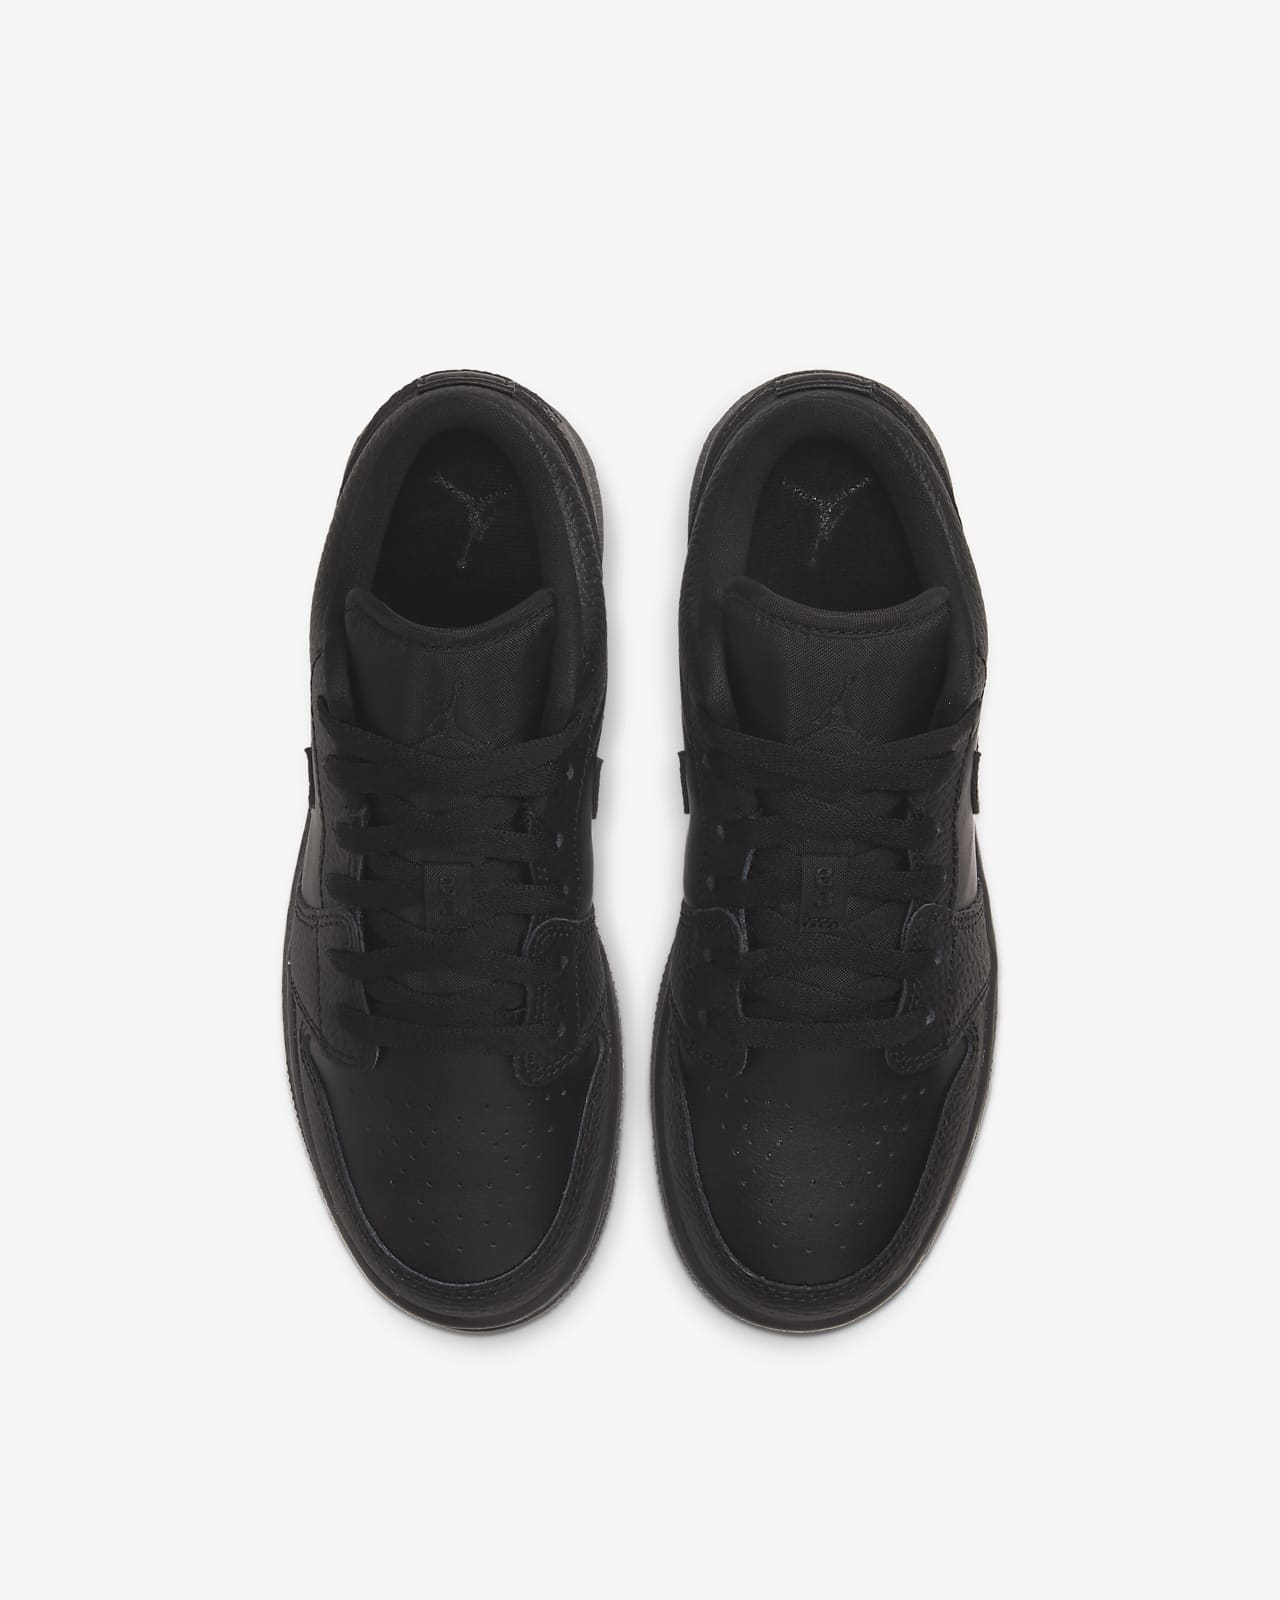 Air Jordan 1 Low Older Kids' Shoe. Nike SA